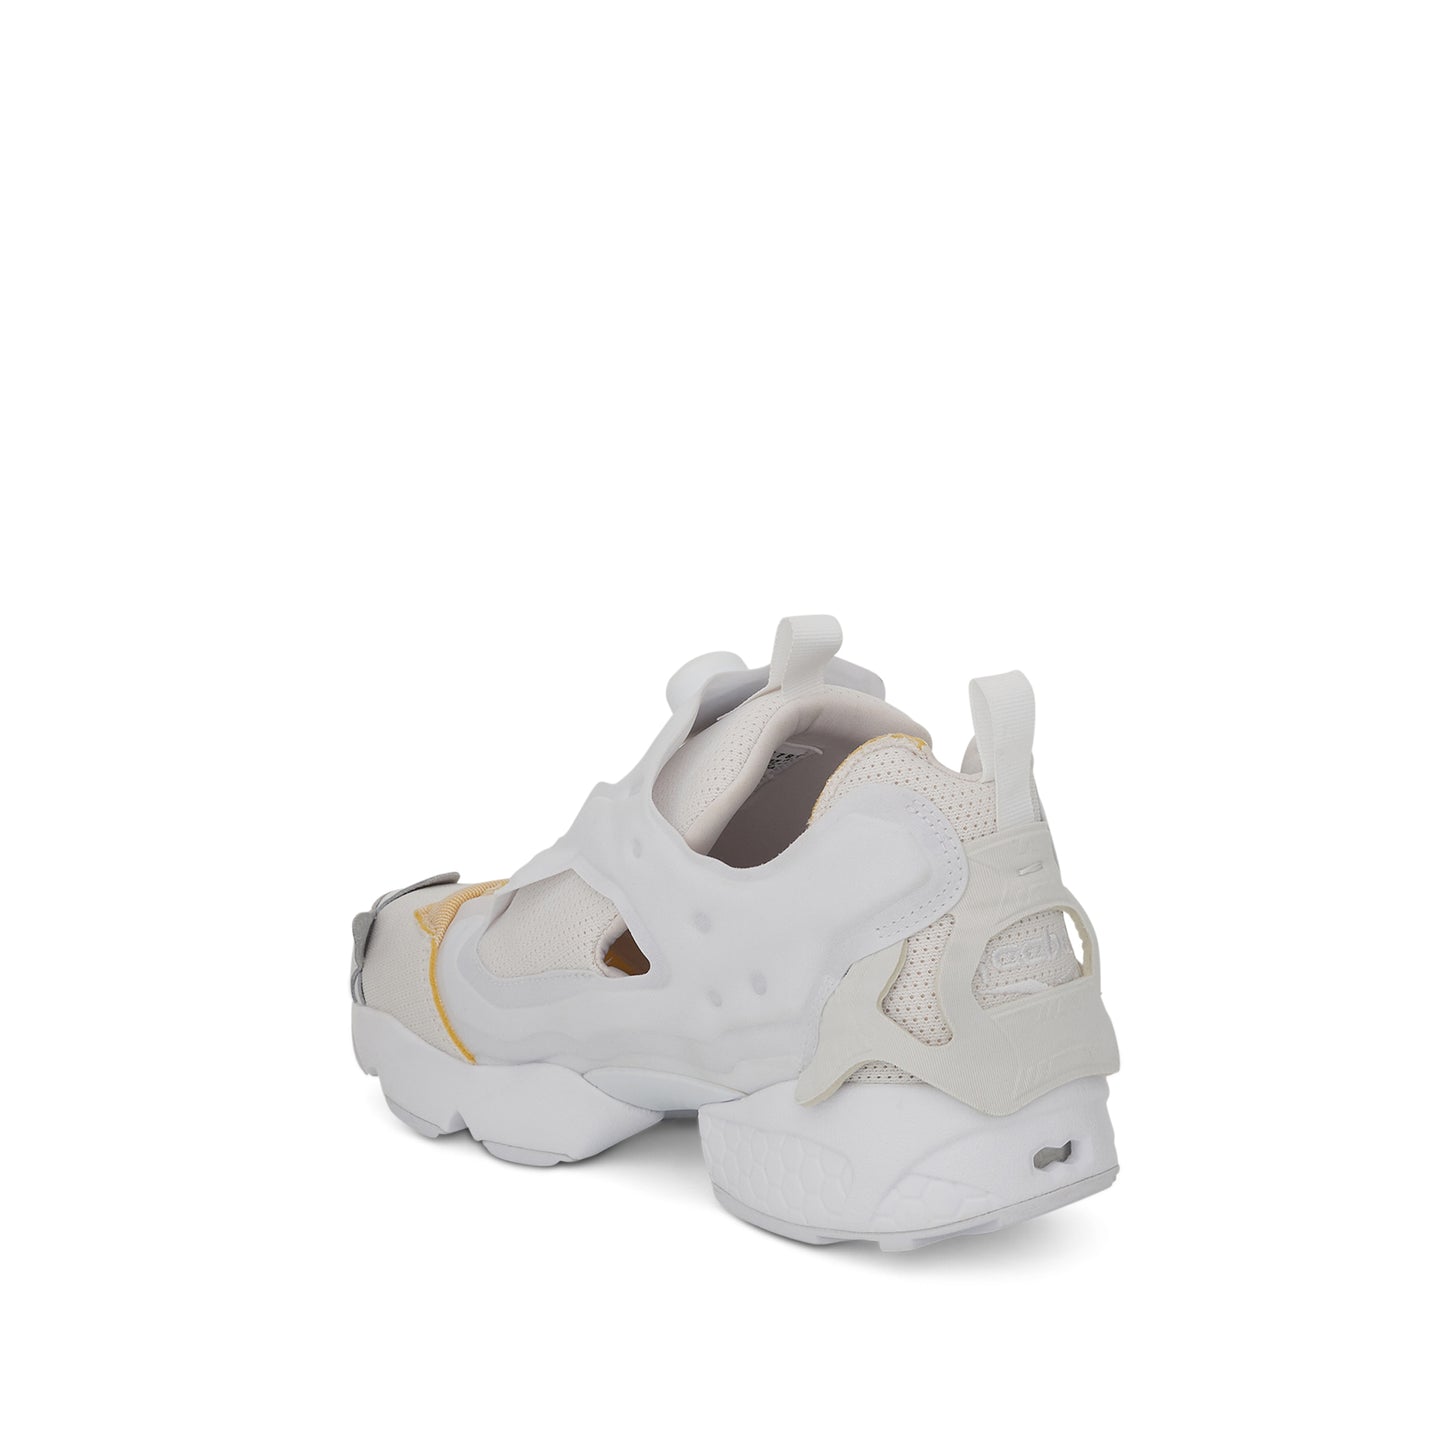 Reebok x Maison Margiela Project 0 IF Memory OF Sneaker in White